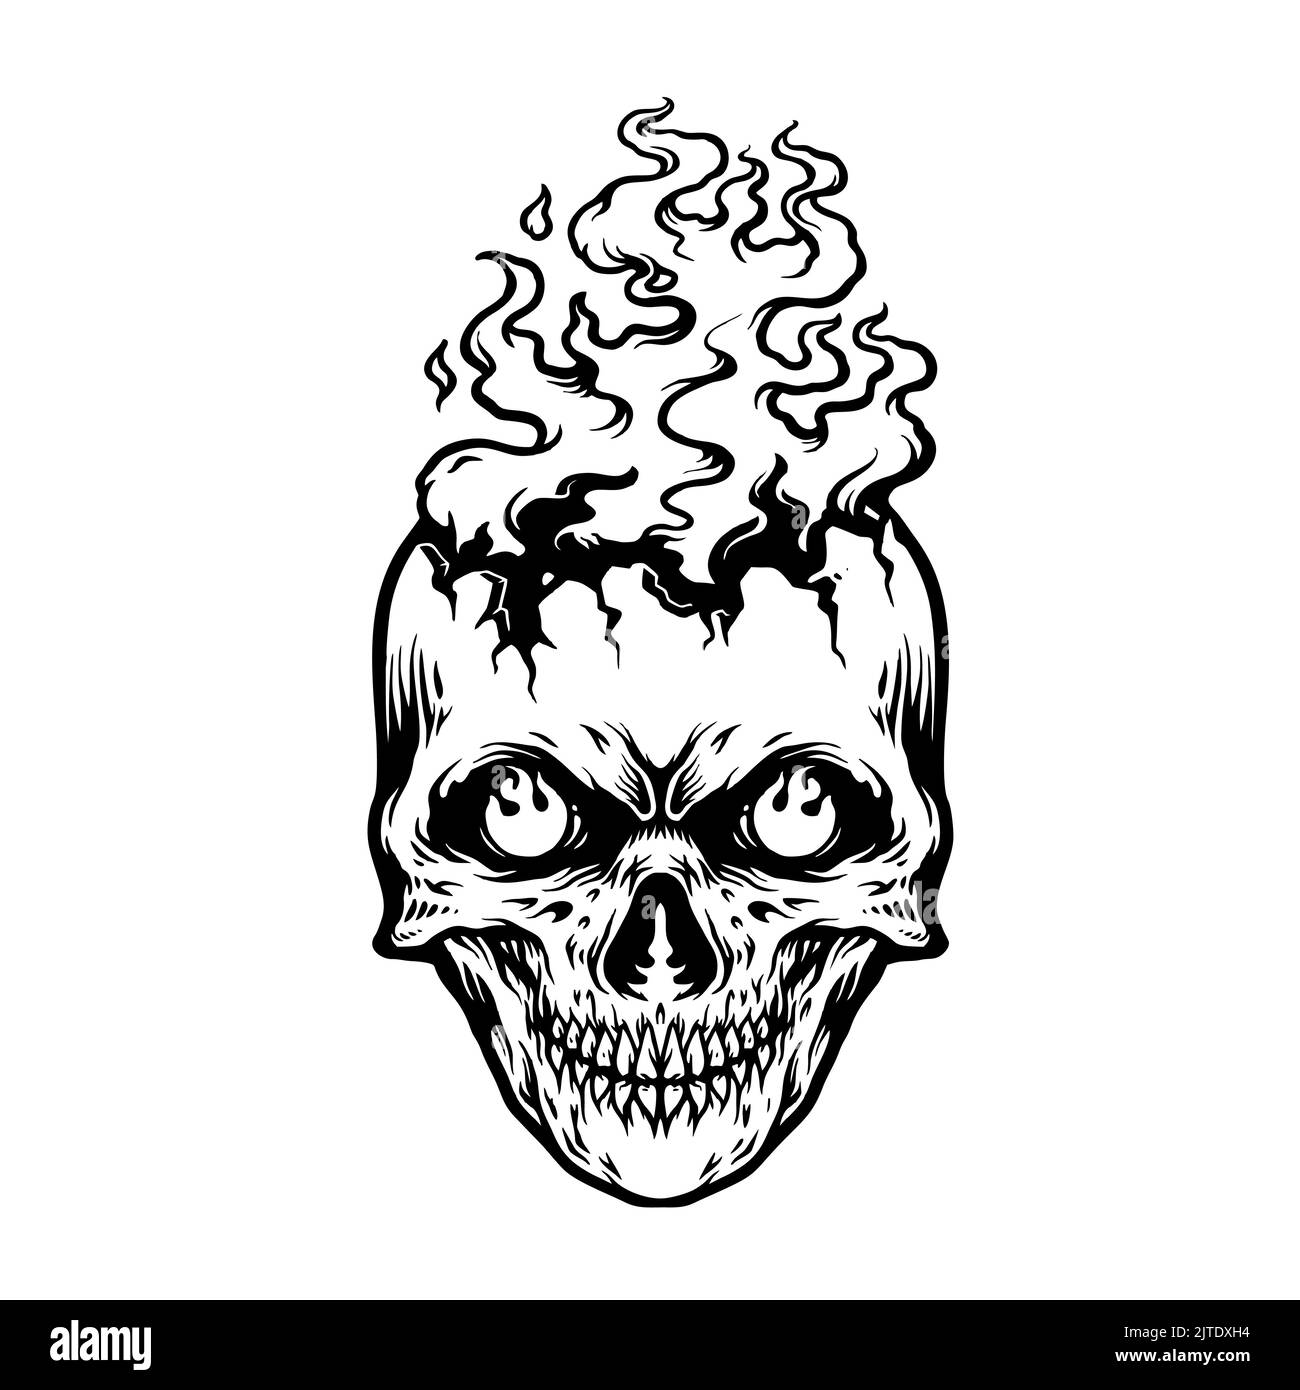 Burn Skull Head Flame Silhouette illustrazioni vettoriali per il tuo lavoro Logo, mascotte merchandise t-shirt, adesivi e disegni di etichette, poster, vettura di benvenuto Foto Stock